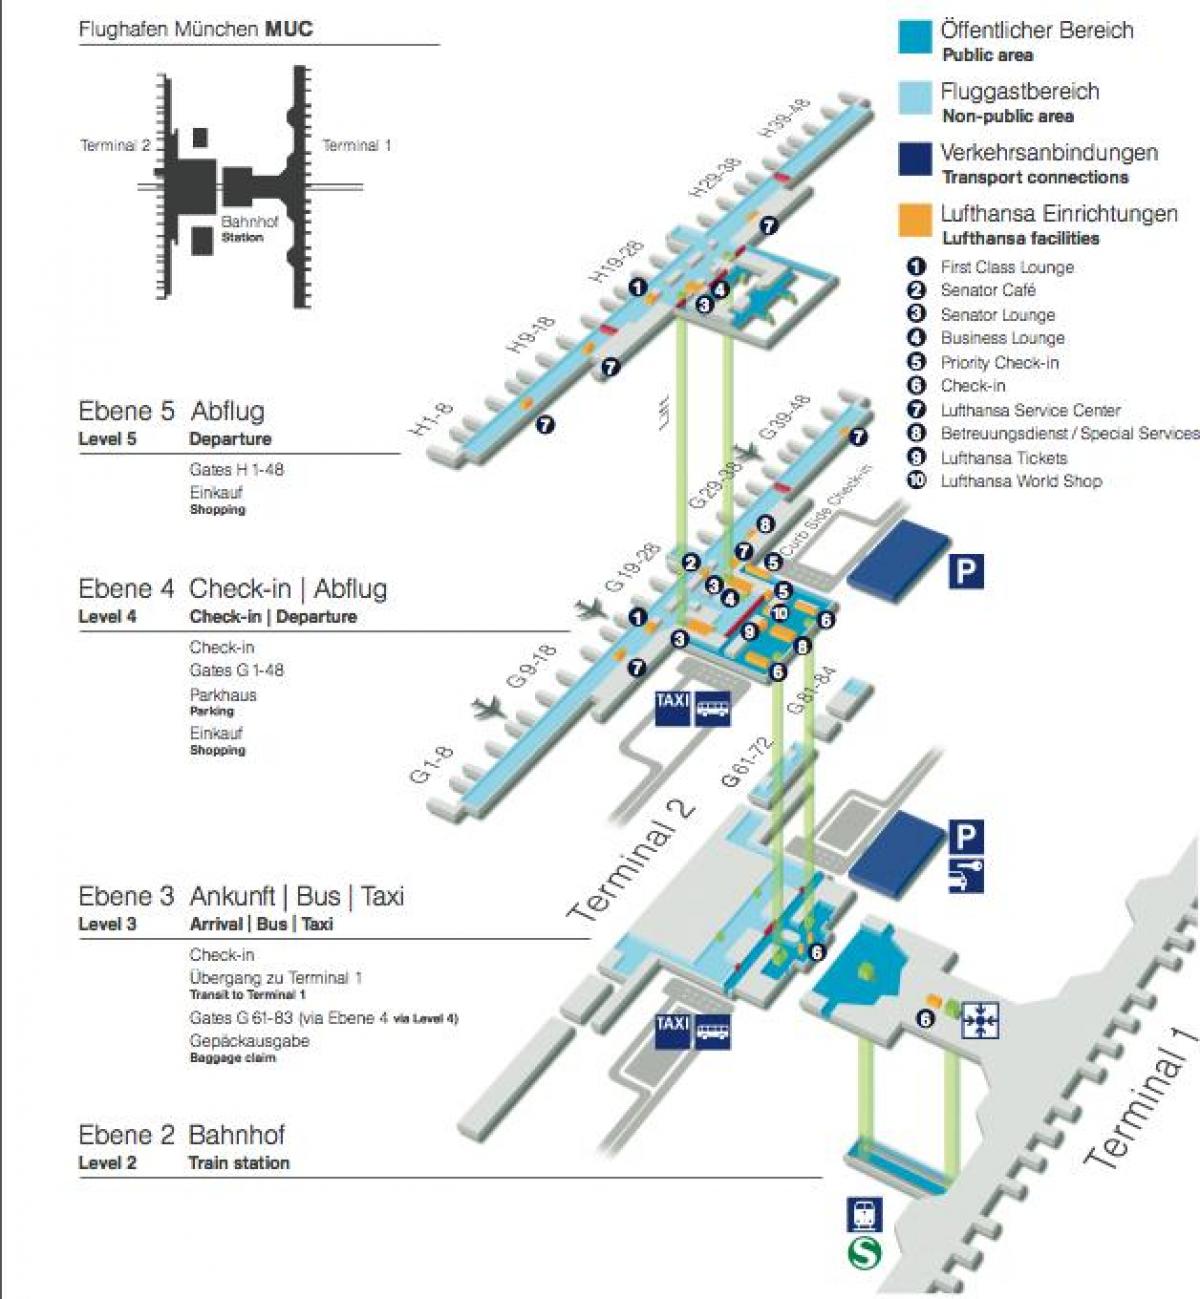 Münih havaalanı lufthansa haritası 